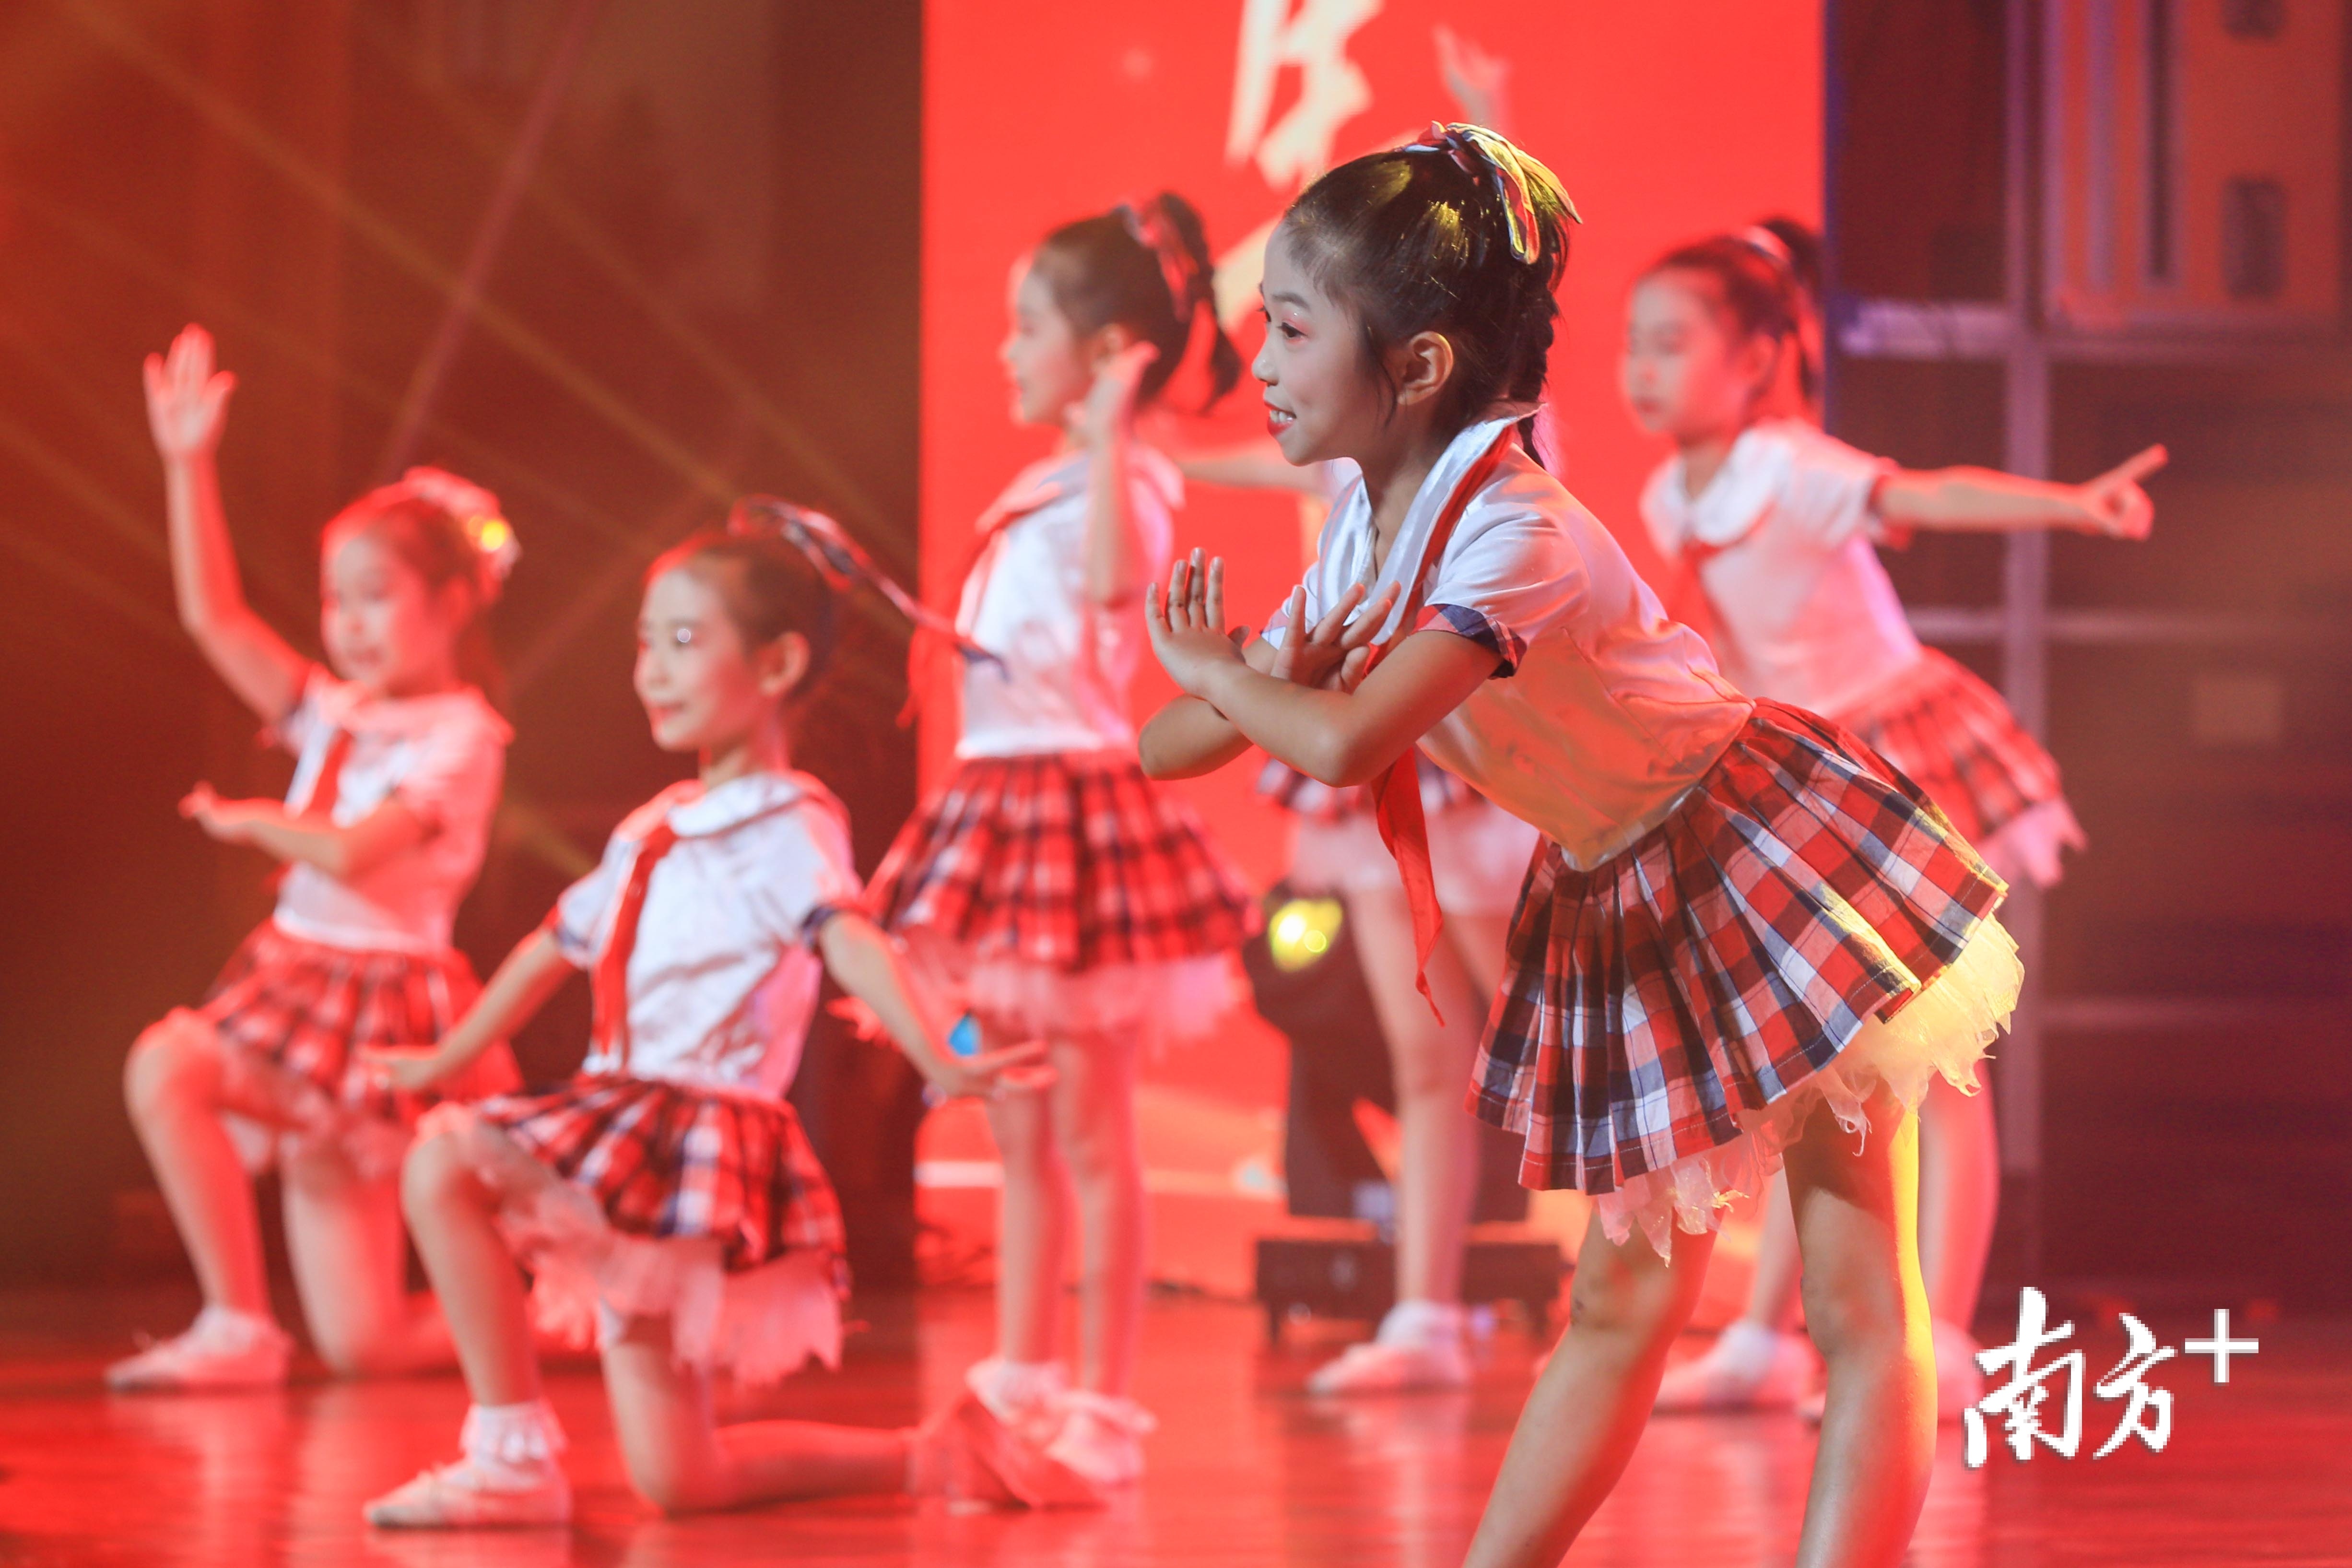 香洲区云峰小学选送的舞蹈《生命敬仰》。